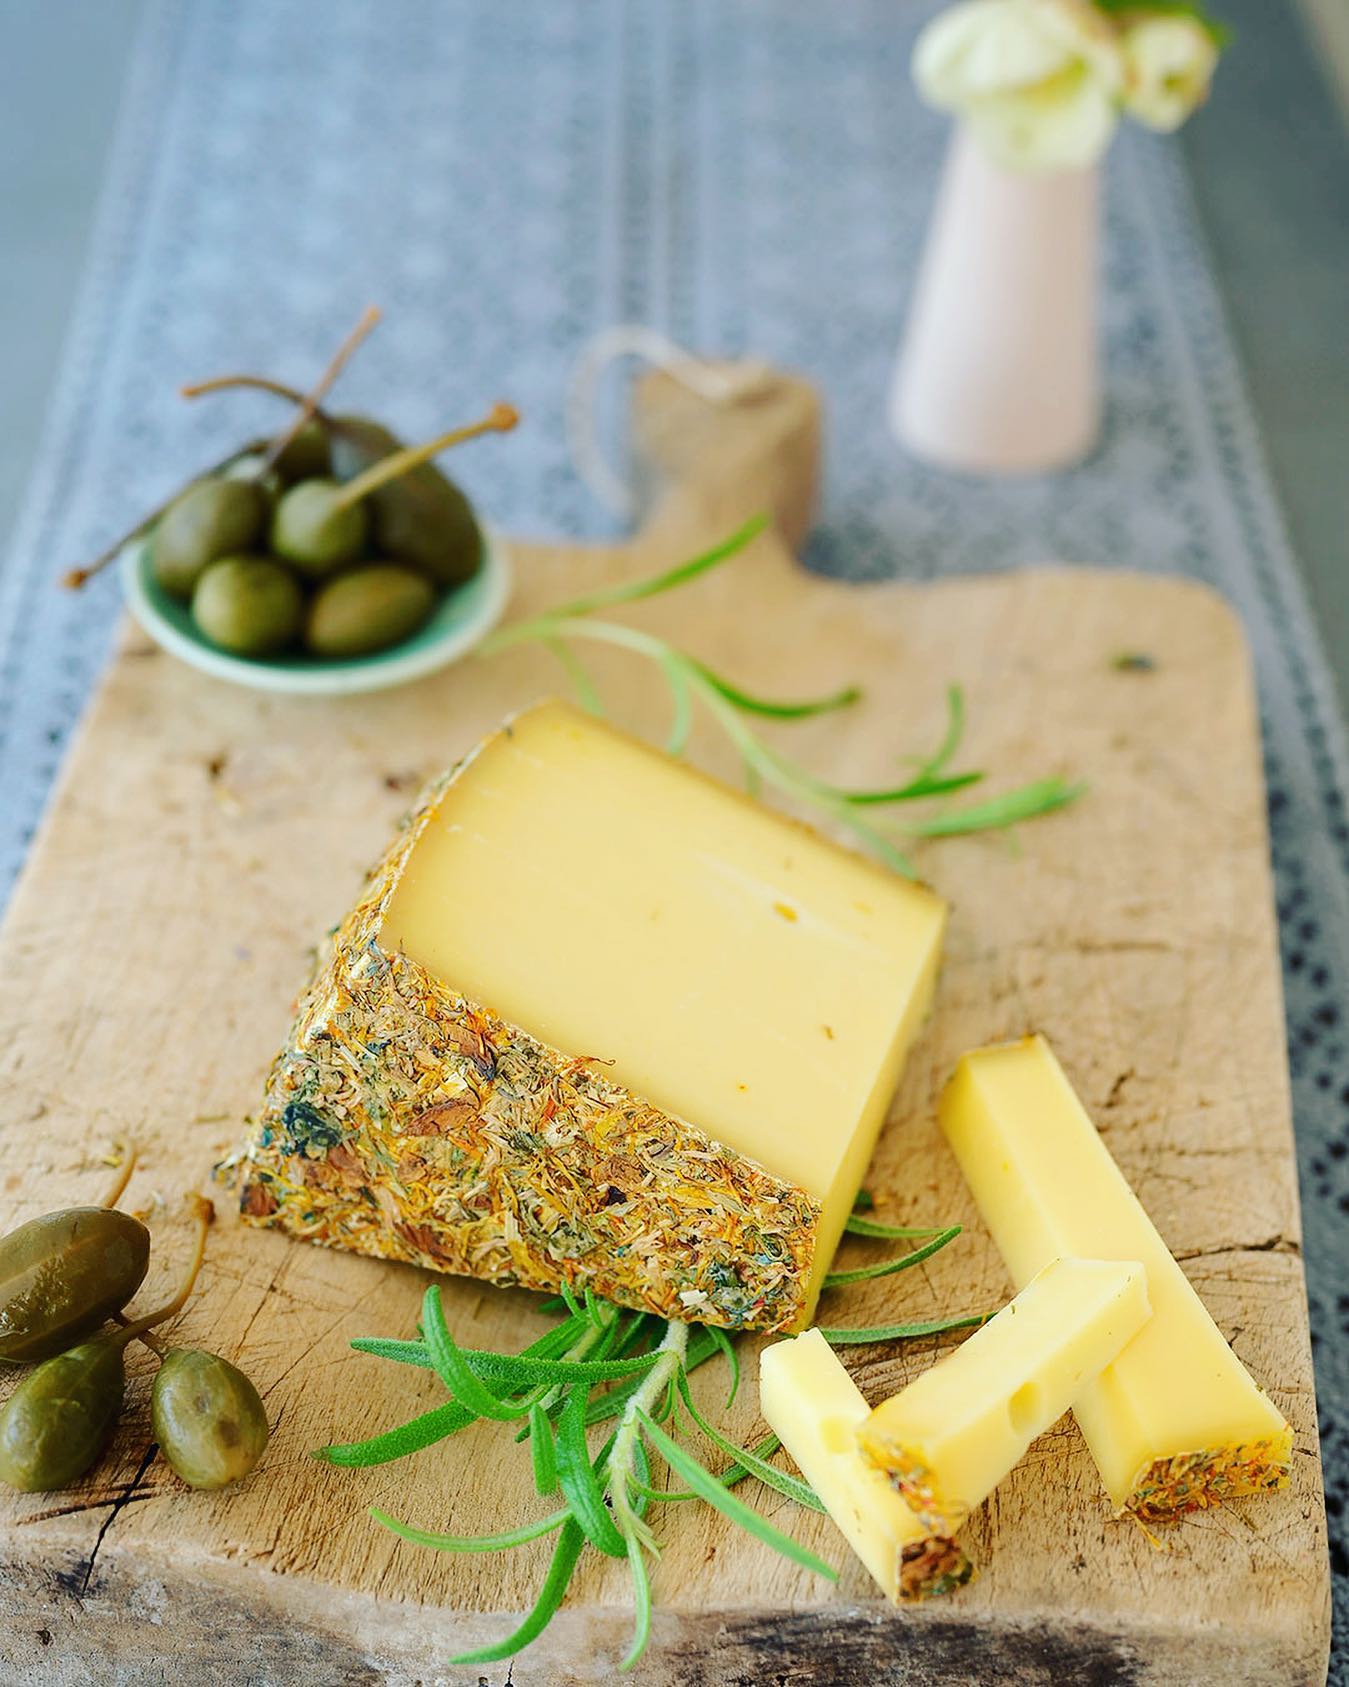 OST MED BLOMSTER
Er det ikke vildt, at man igen og igen møder nye og ukendte oste? 

For nylig stødte jeg på 8 Blumen, en komælksost af upasteuriseret mælk fra Appenzell-regionen i Schweiz. 

Osten er dekoreret med otte forskellige lokale blomster, som også giver osten smag, da de modner sammen. Flot og godt på samme tid. 🤩
.
.
.

#ostesnak #cheesetalks #cheese #cheeseislife #cheeselovers #instacheese #cheeseplease #ost #cheeseblogger #foodie #fromage #cheeseblog #foodstylist #cheesephoto #cheesephotography 
#onmytable #onmyplate #cheeseplate #cheeseplatter #ostebord #ostebræt #cheeseboard #swisscheese #8blumen #8blumenkäse